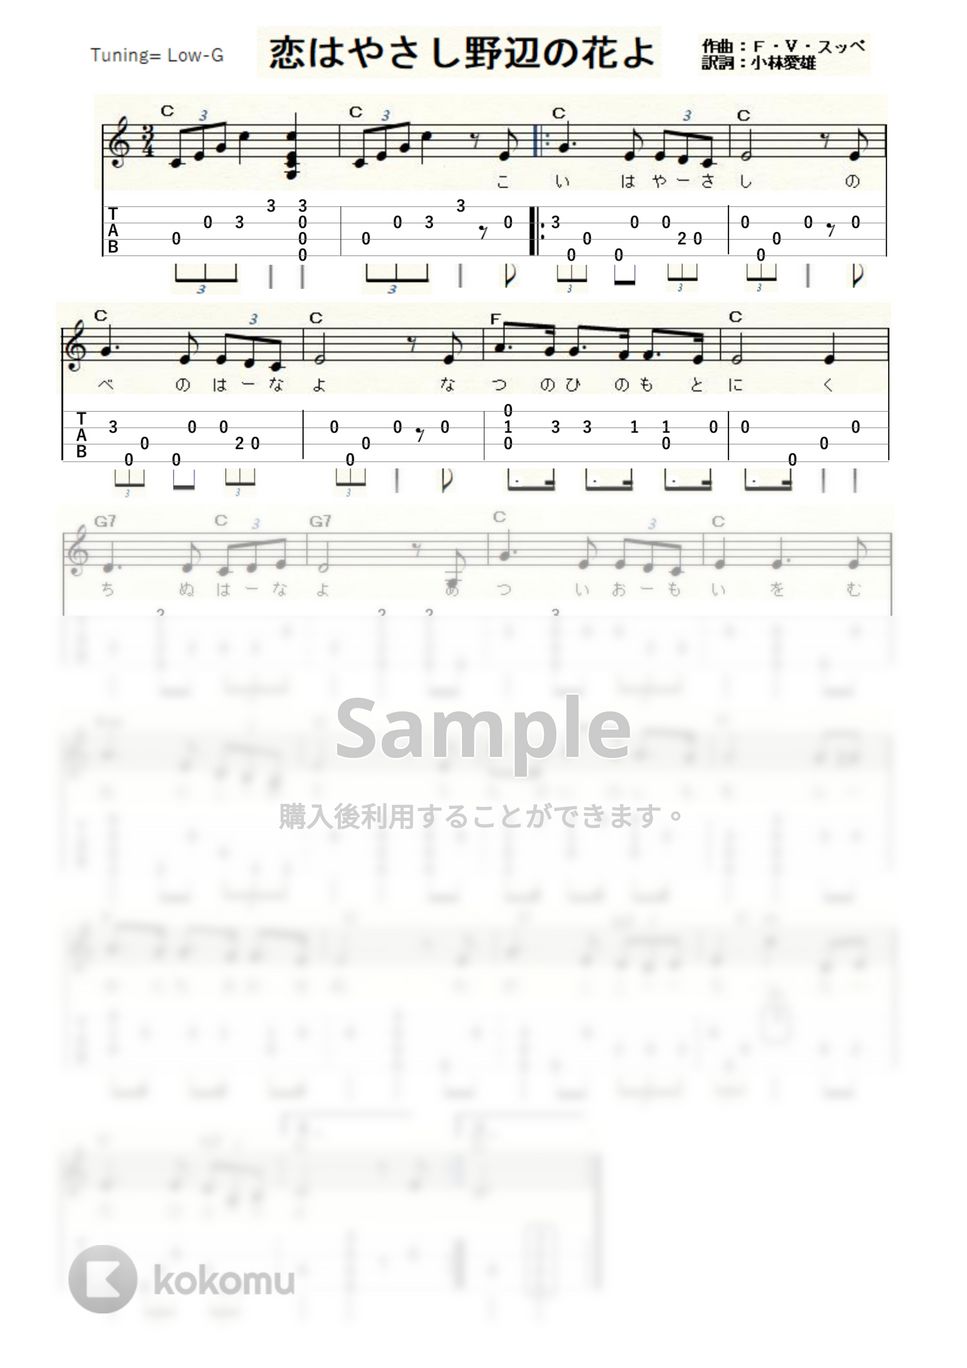 松井須磨子 - 恋はやさし野辺の花よ (ｳｸﾚﾚｿﾛ / Low-G / 初級) by ukulelepapa